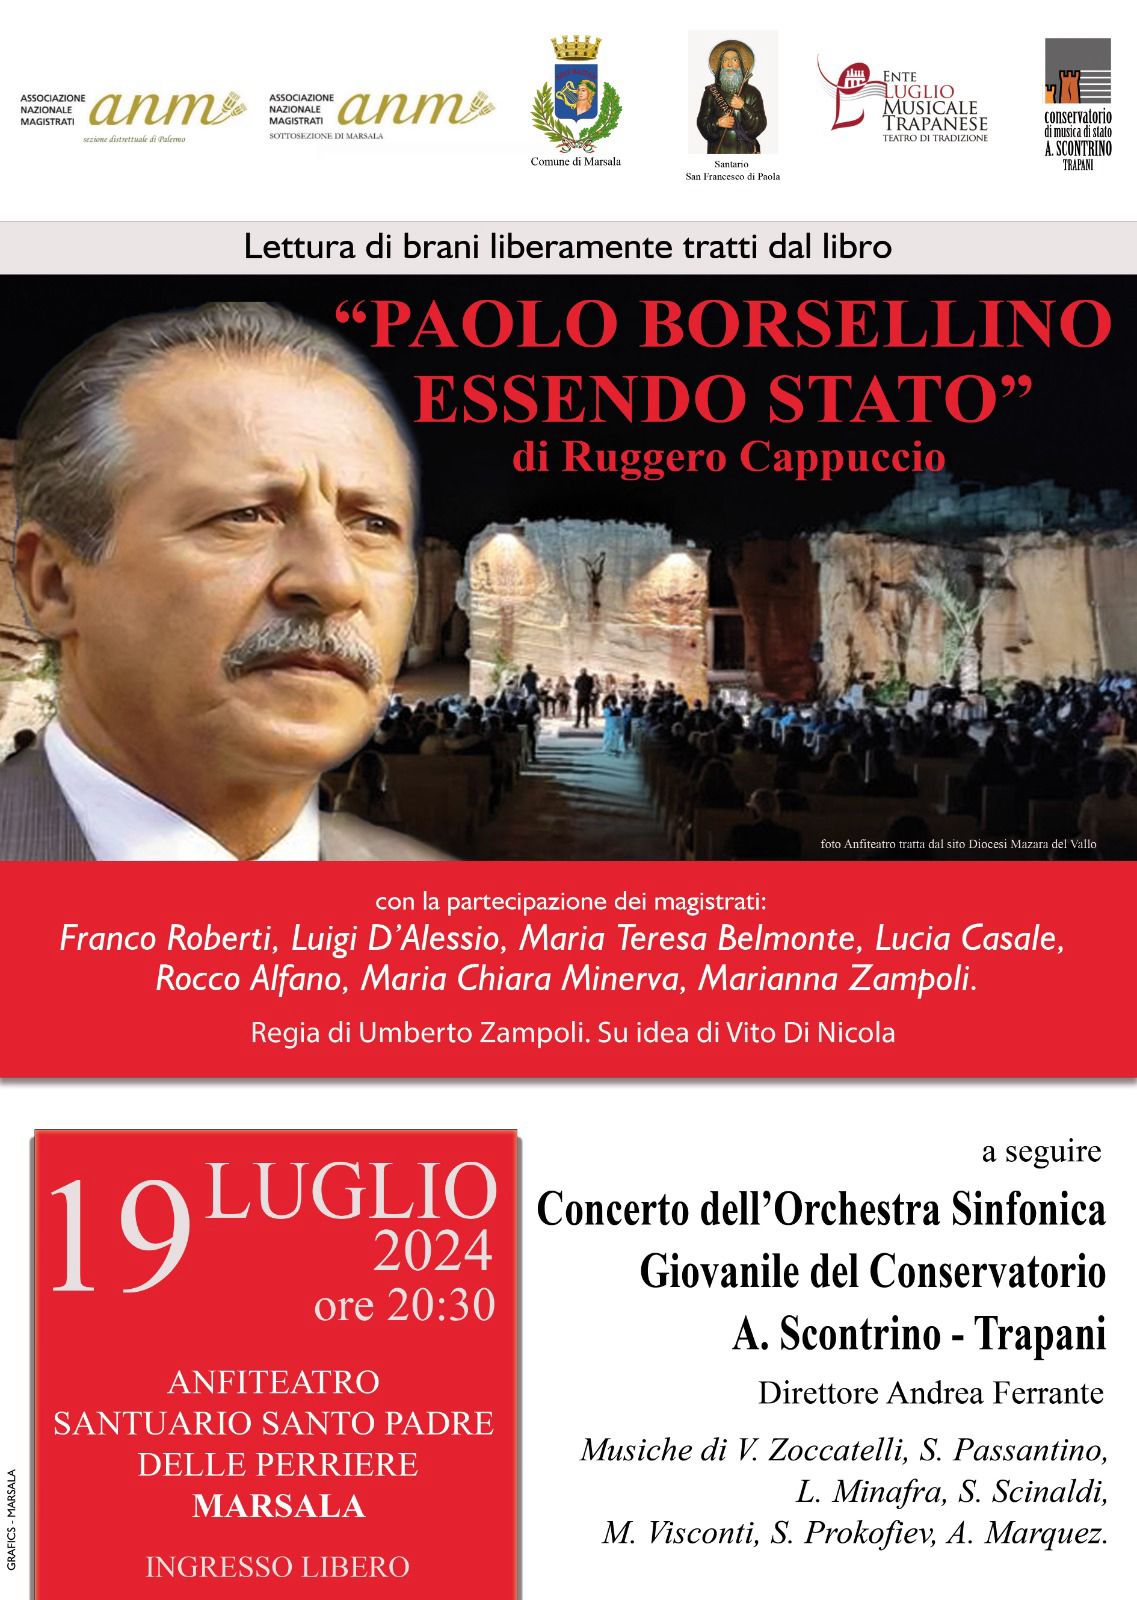 Marsala: Cerimonia commemorativa per Paolo Borsellino. A seguire il concerto dell’orchestra sinfonica giovanile del Conservatorio A.Scontrino di Trapani